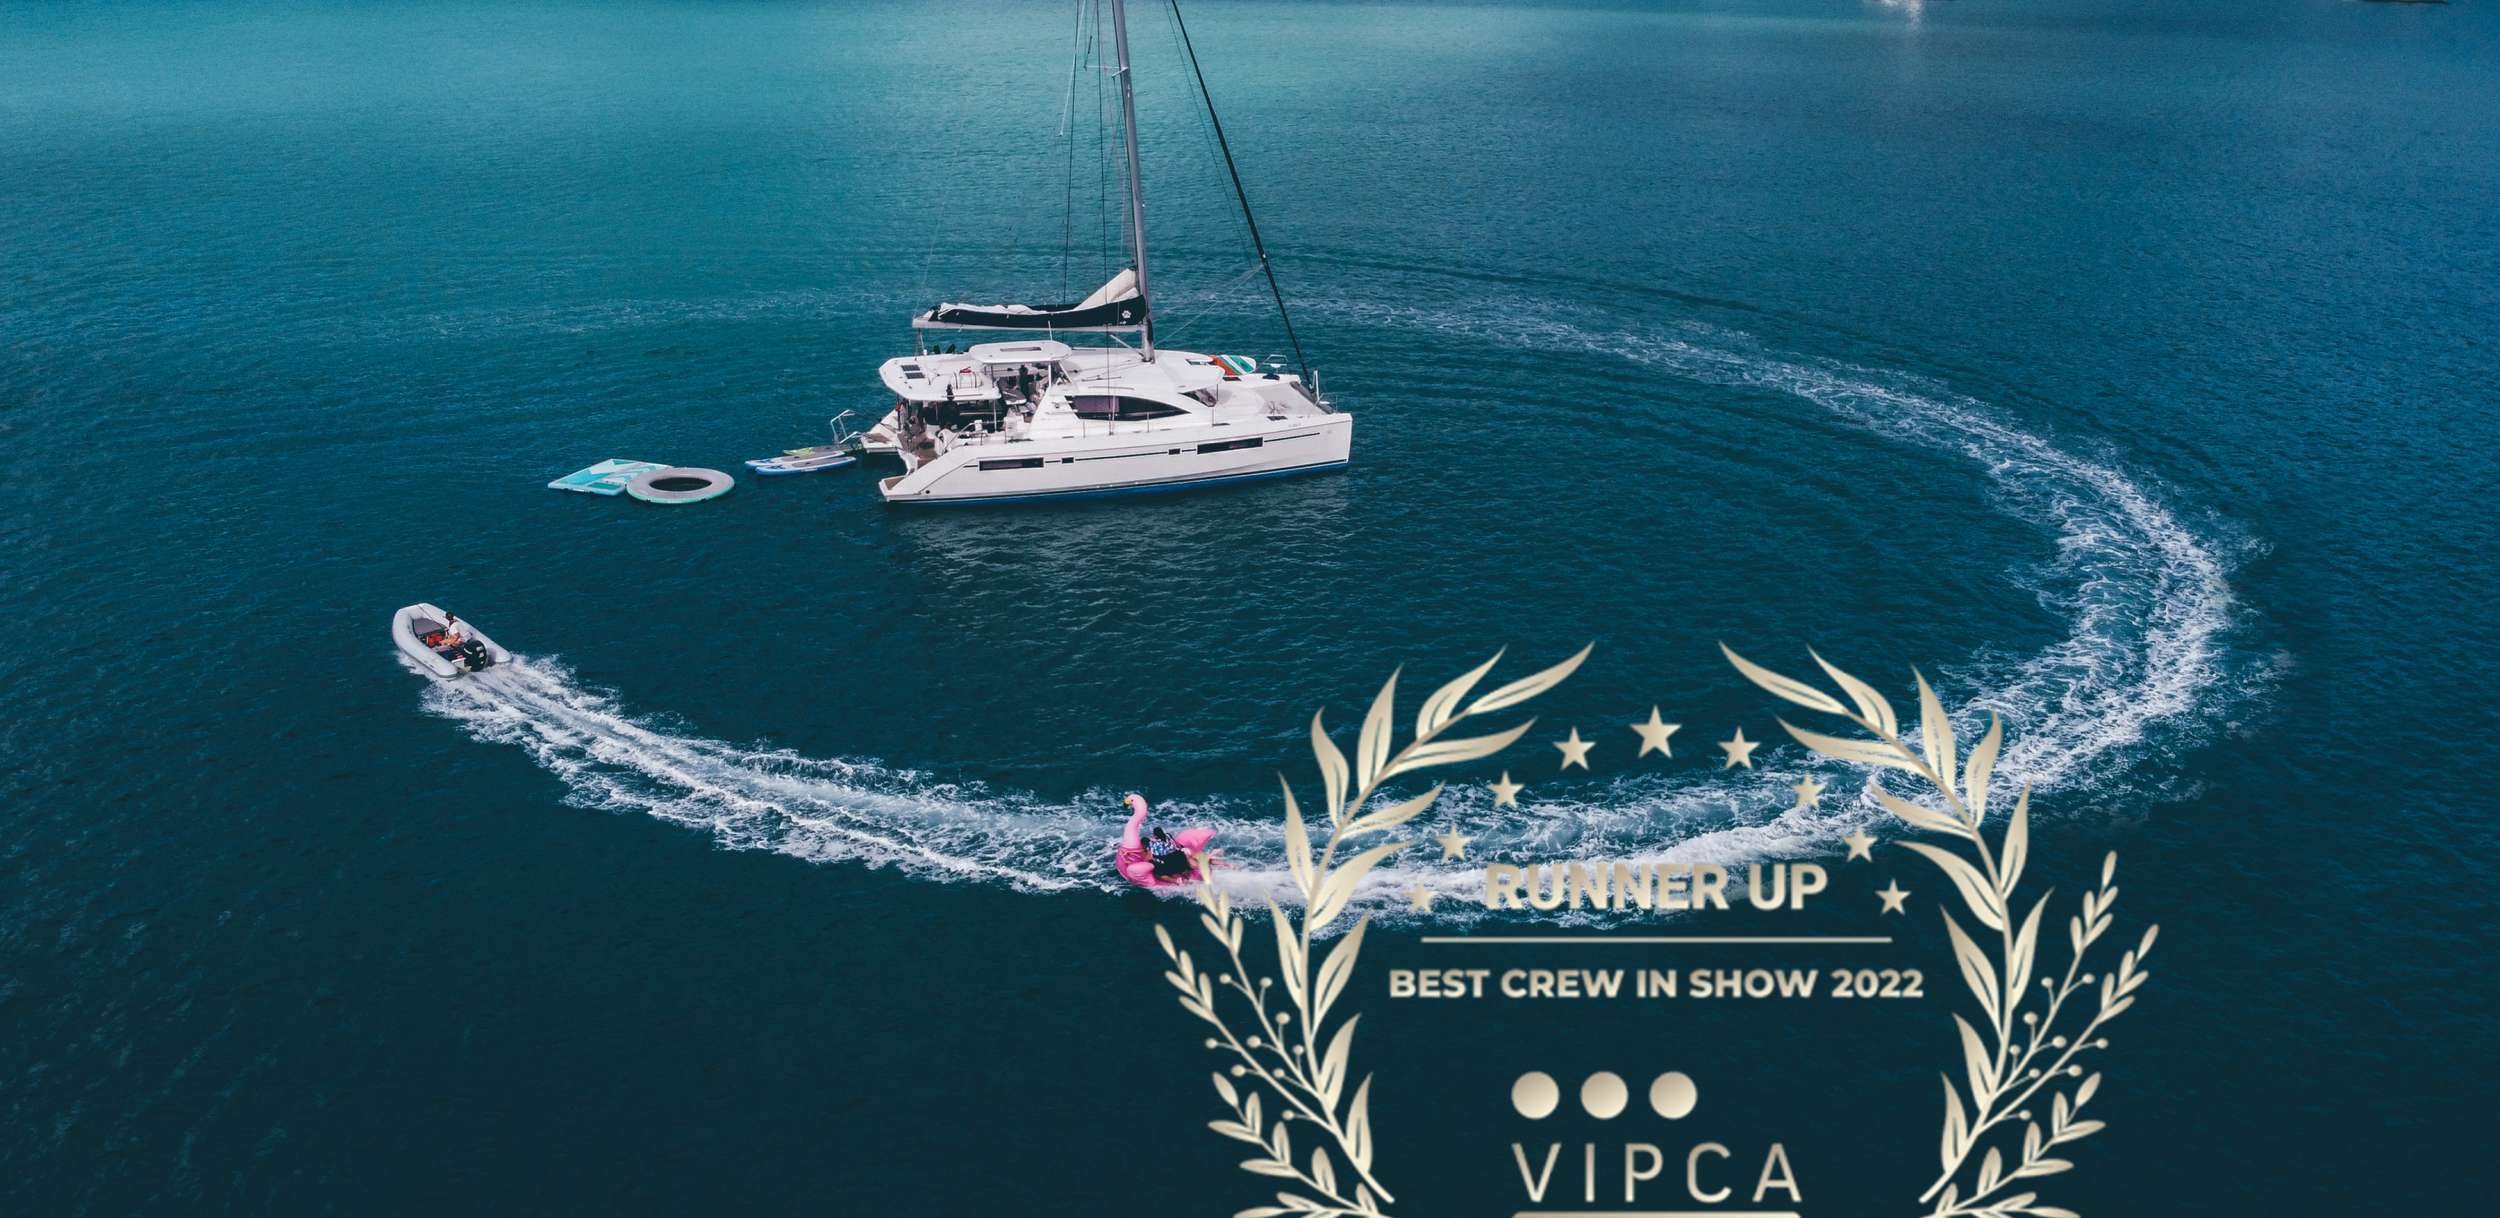 VICARIOUS yacht main image